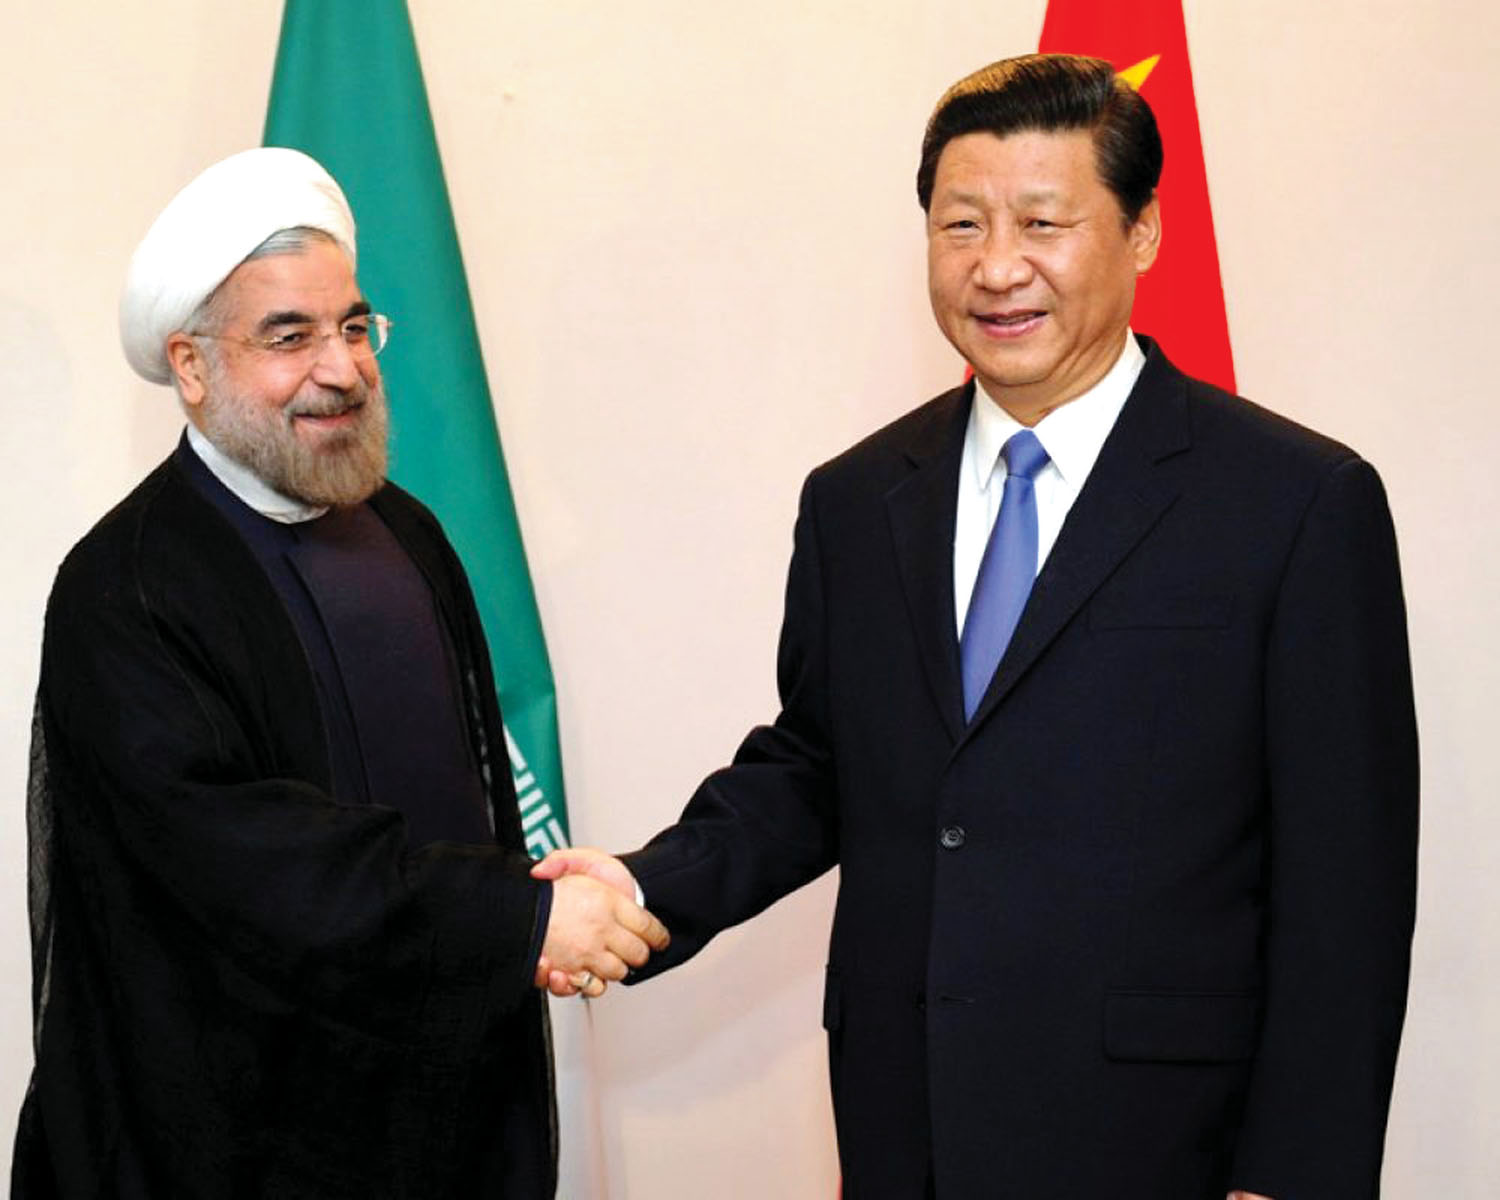 中国与伊朗据报将签署长达25年的合作协议。这或许会打击美国对伊朗的制裁政策，令中美关系更进一步紧张。图为中国国家主席习近平(右)和伊朗总统鲁哈尼会面。资料图片